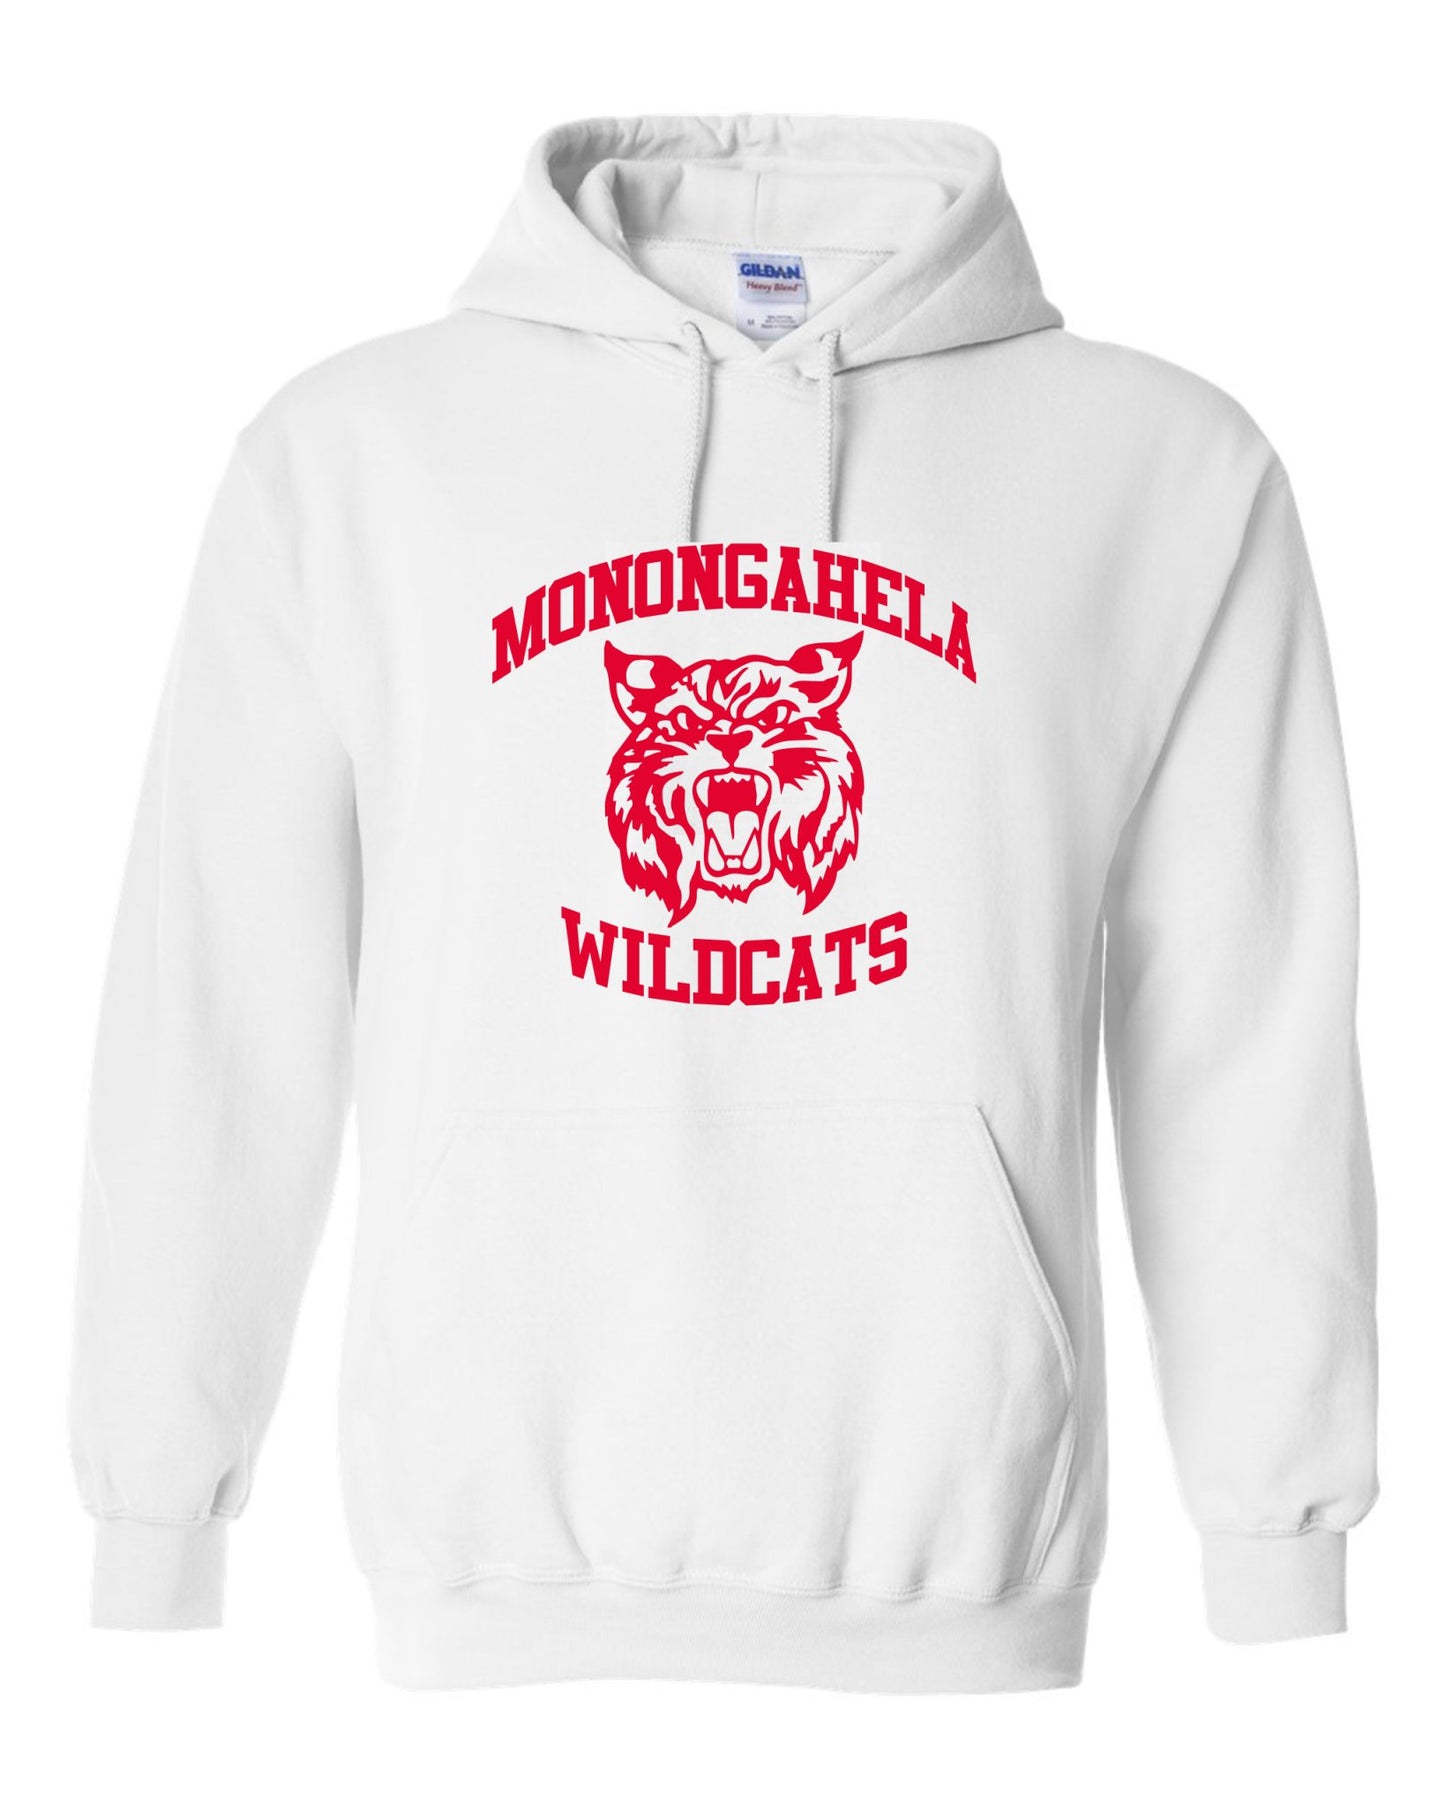 Monongahela Wildcats Hooded Sweatshirt Hoodie - SBS T Shop